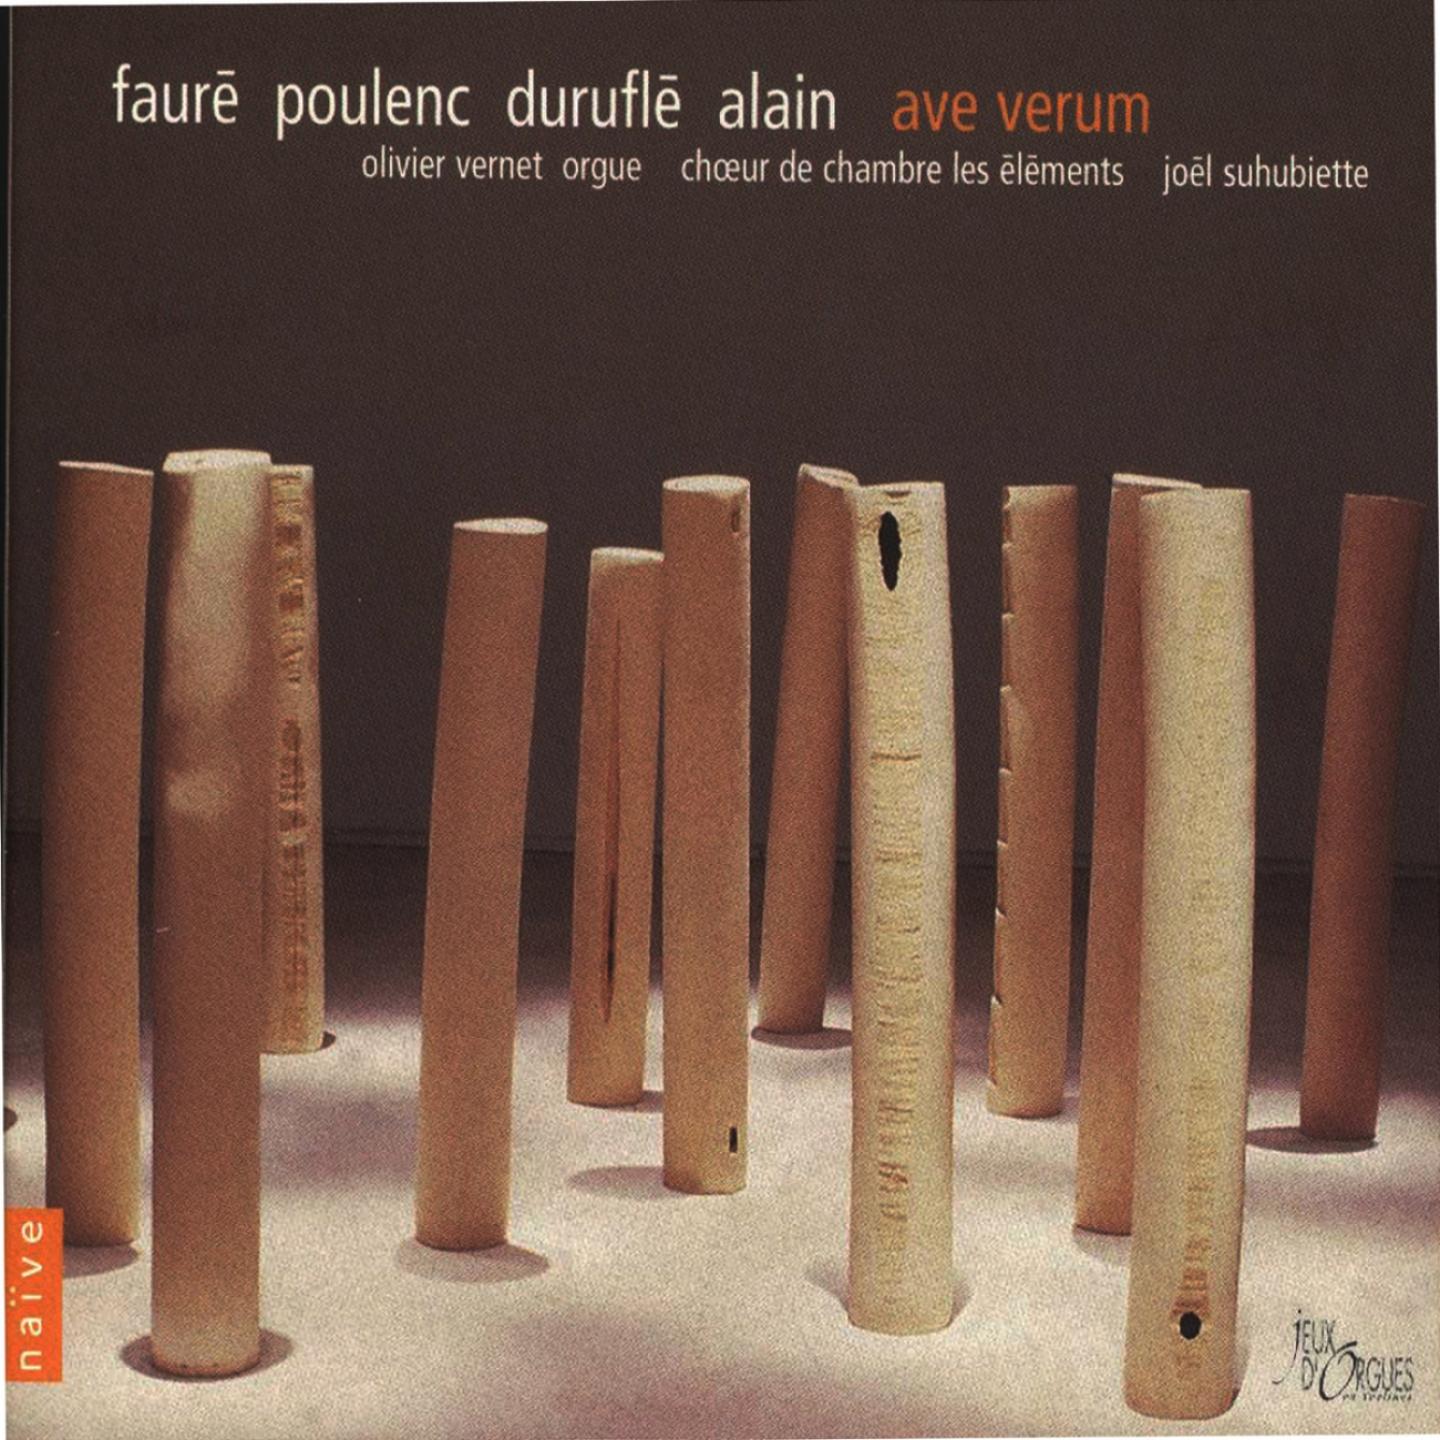 Ave verum corpus, for 3-part Female Chorus, FP 154: Bien lent